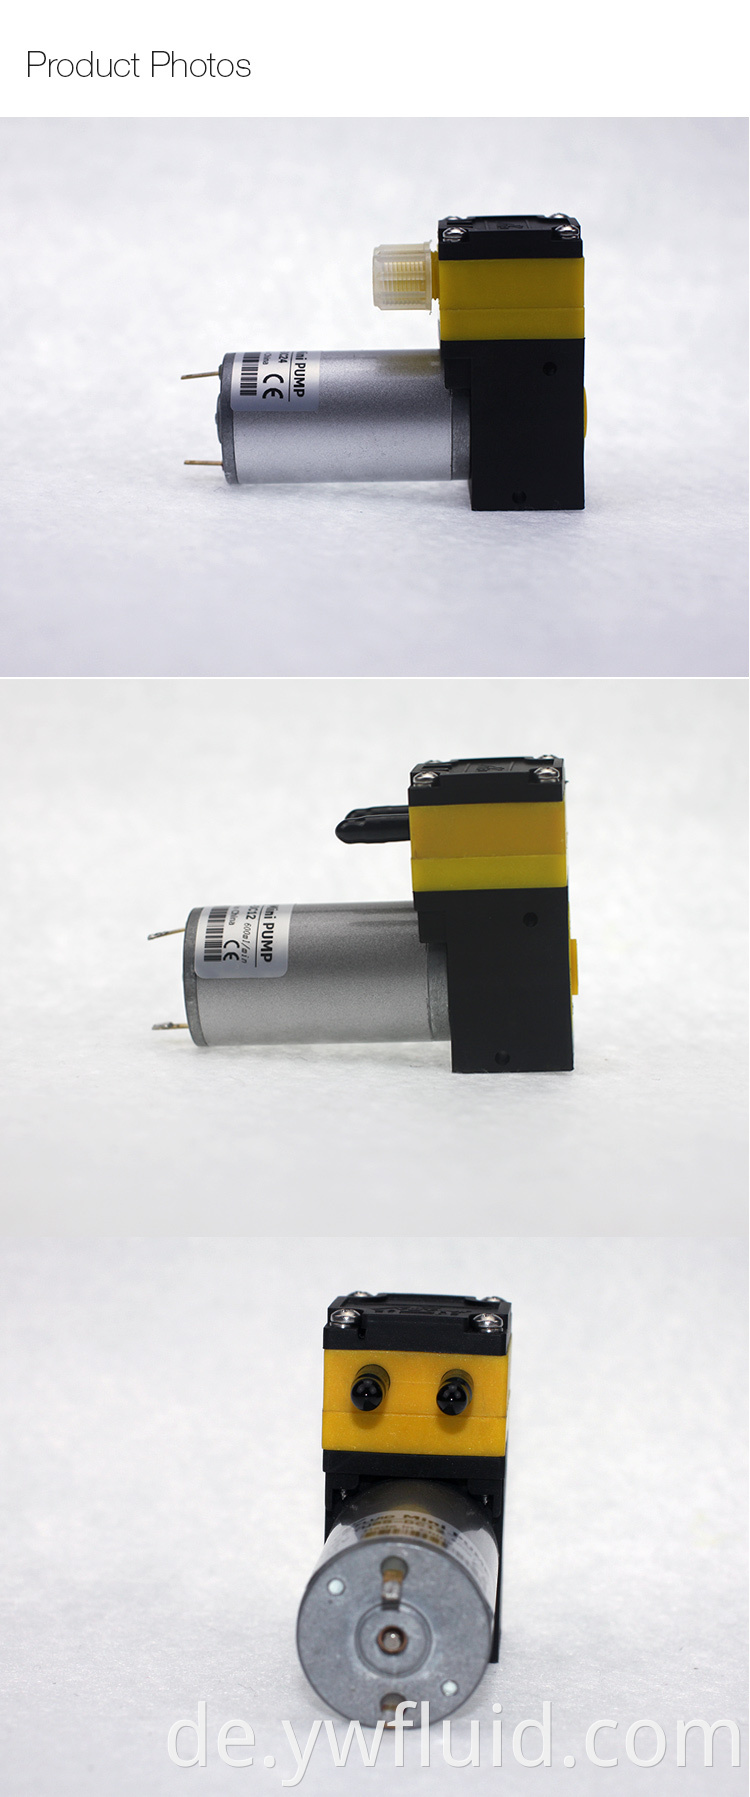 YWfluid Mikromembranpumpe für Tintenstrahldrucker mit einer Flussrate von 600 ml / min für den Tintenstrahldruck verwendet